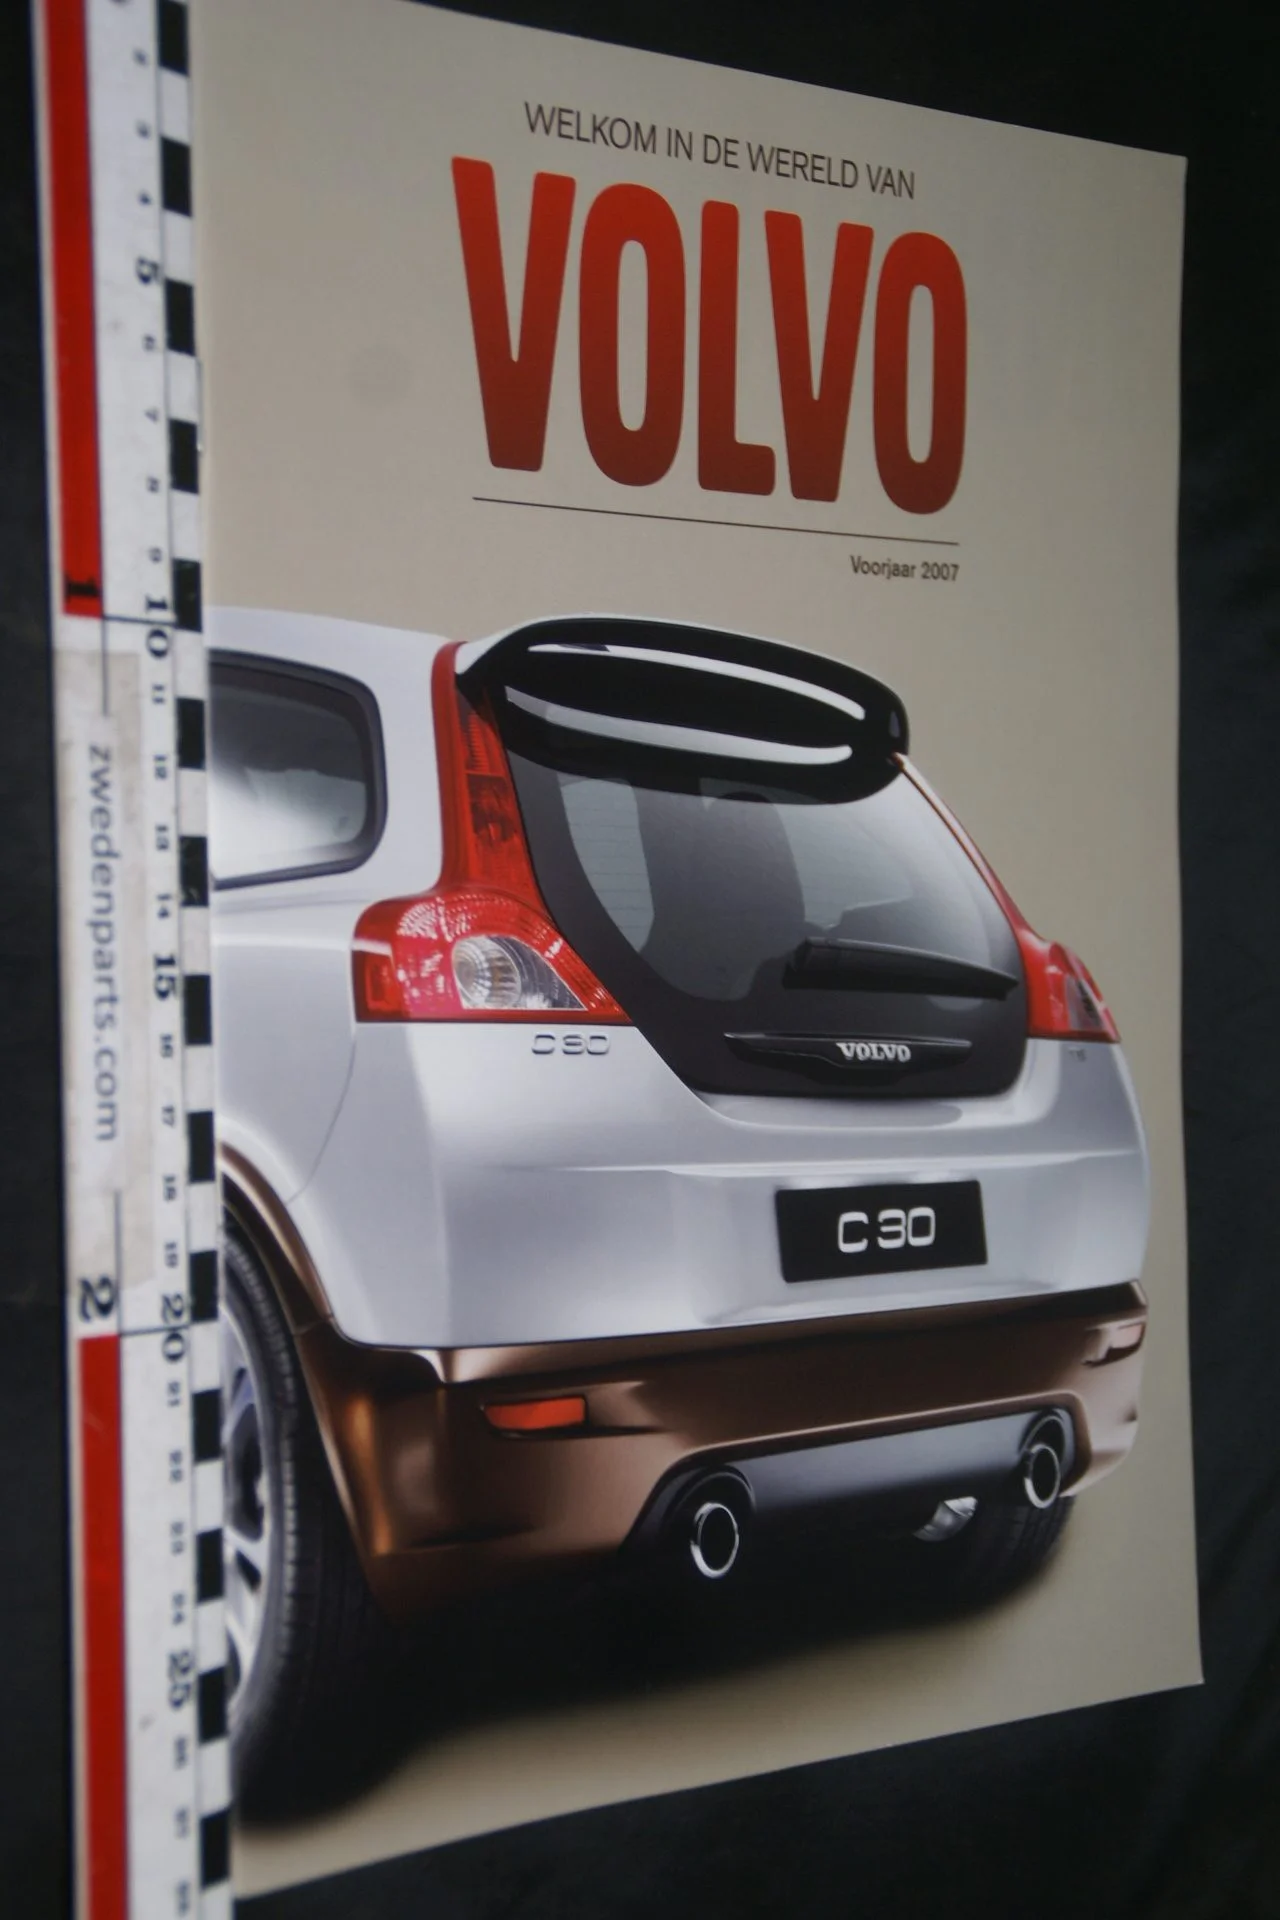 DSC06058 2007 voorjaar brochure Volvo C30